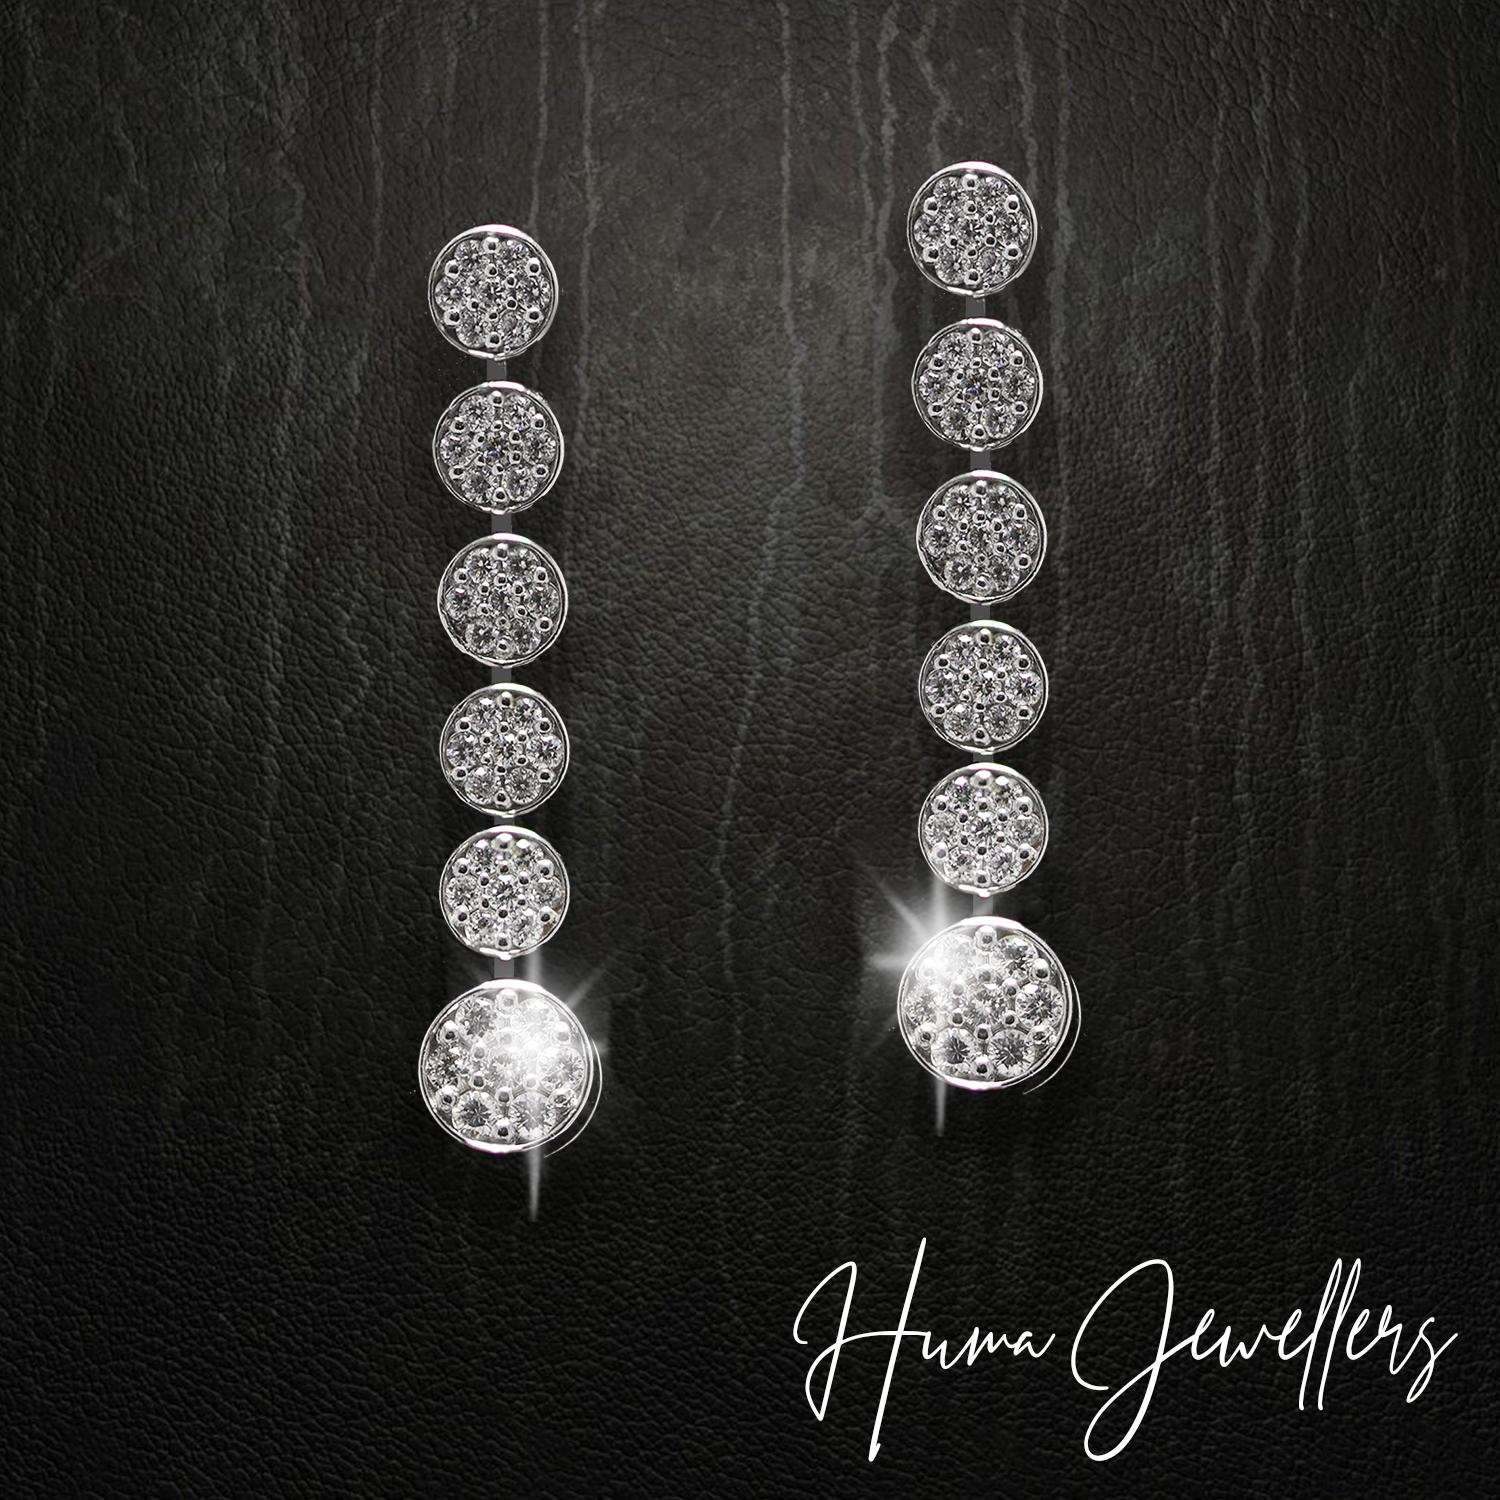 modern diamond earrings design with illusion setting in huma jewellers karachi pakistan